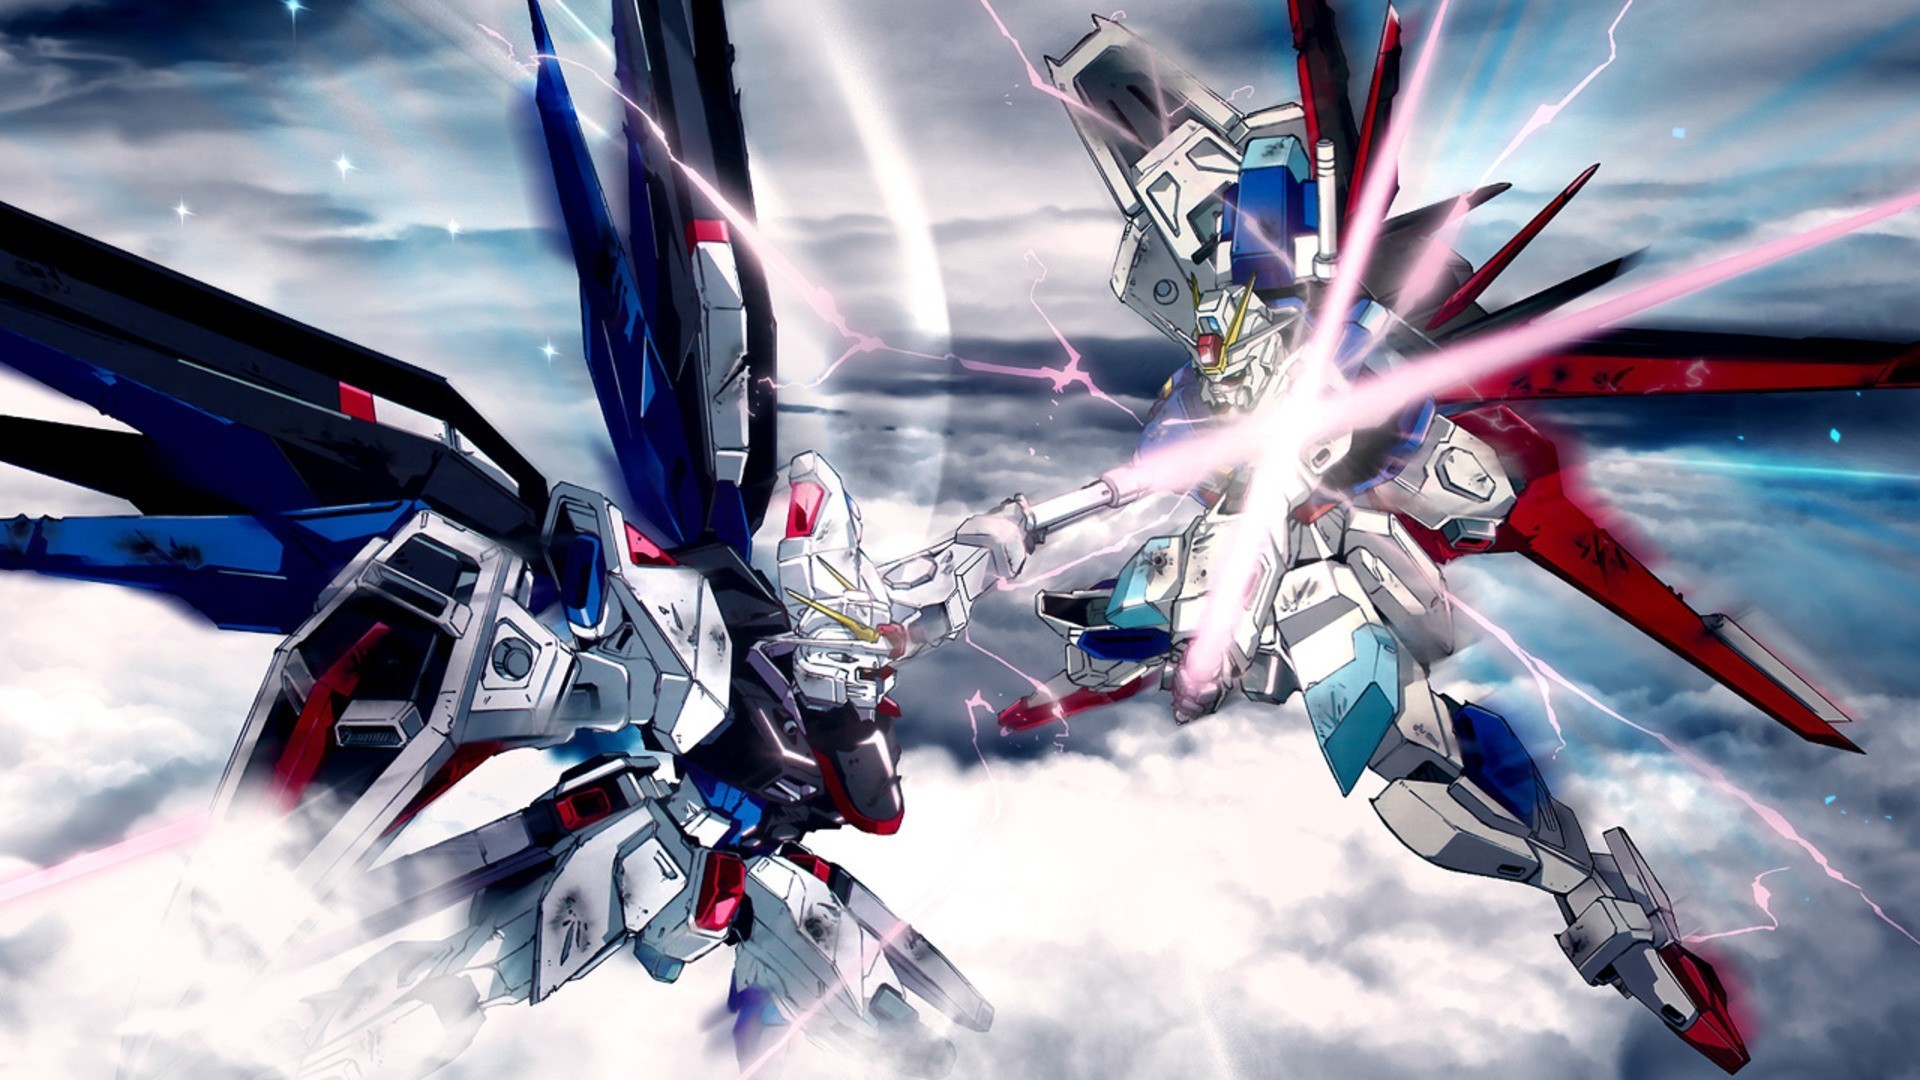 Gundam Wallpapers 1080p – WallpaperSafari